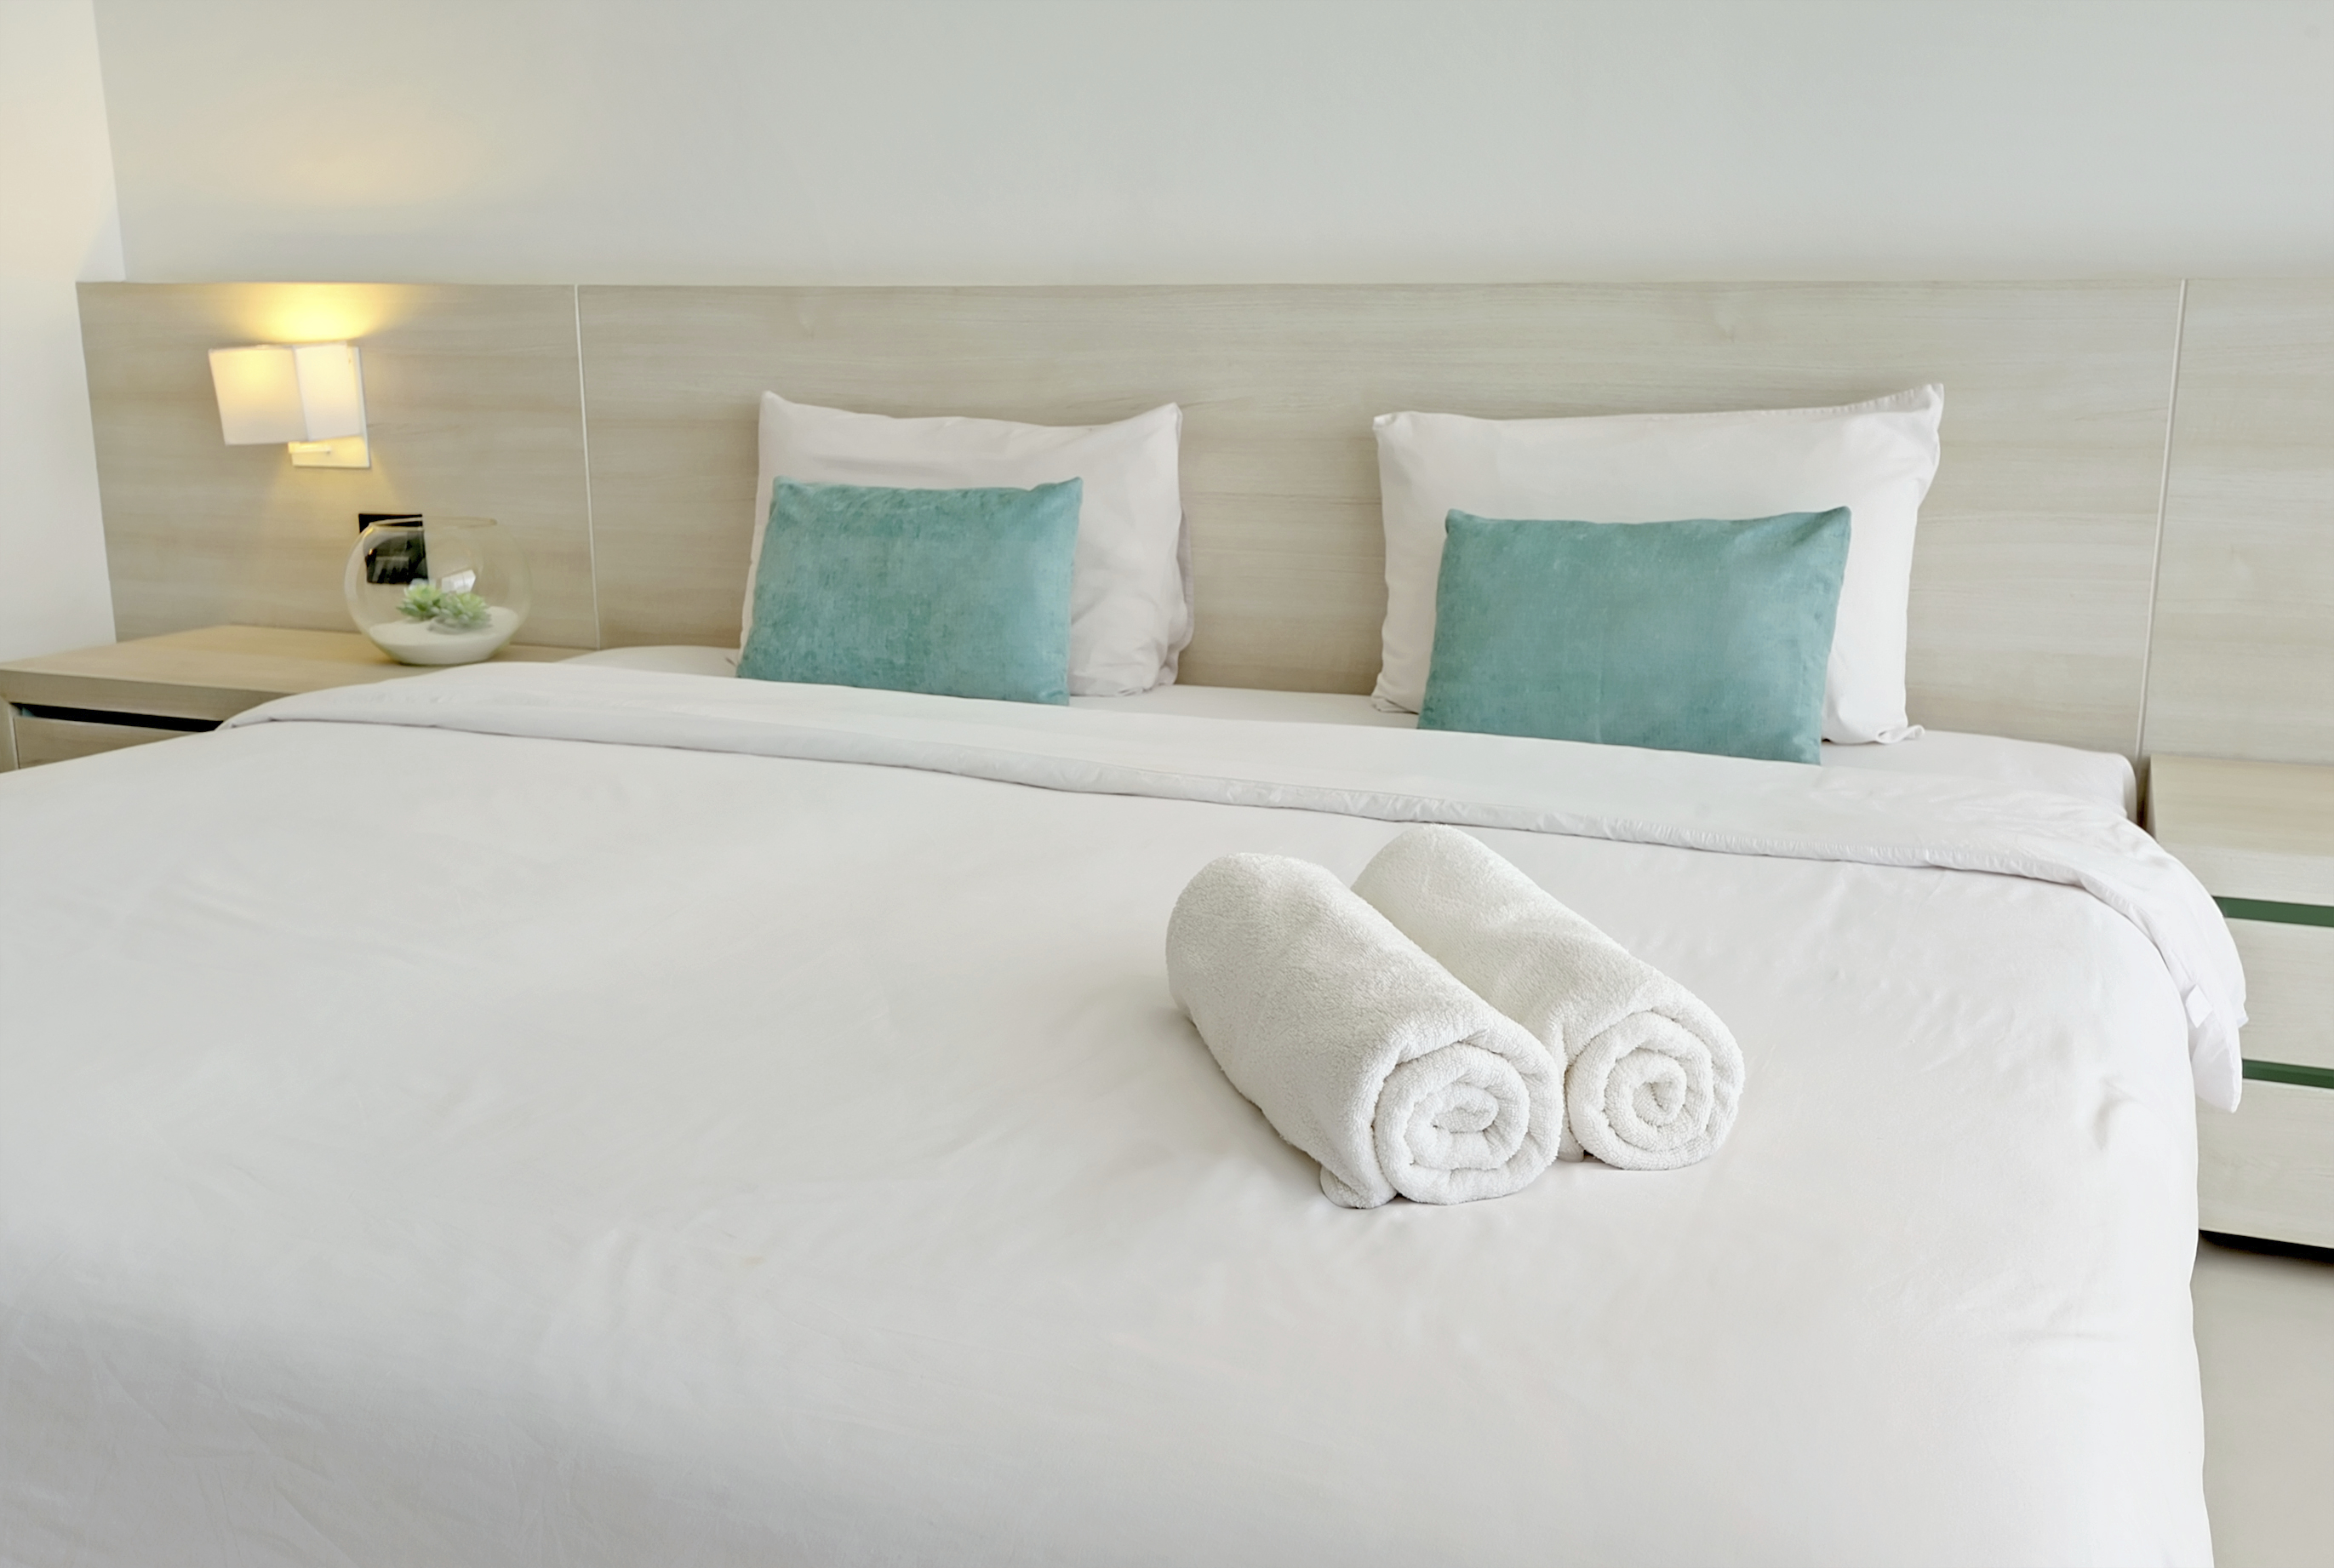 Полотенце на кровати. Текстиль для отелей. Постельное белье в отеле. Полотенца на кровати в отеле. Белая кровать в отеле.